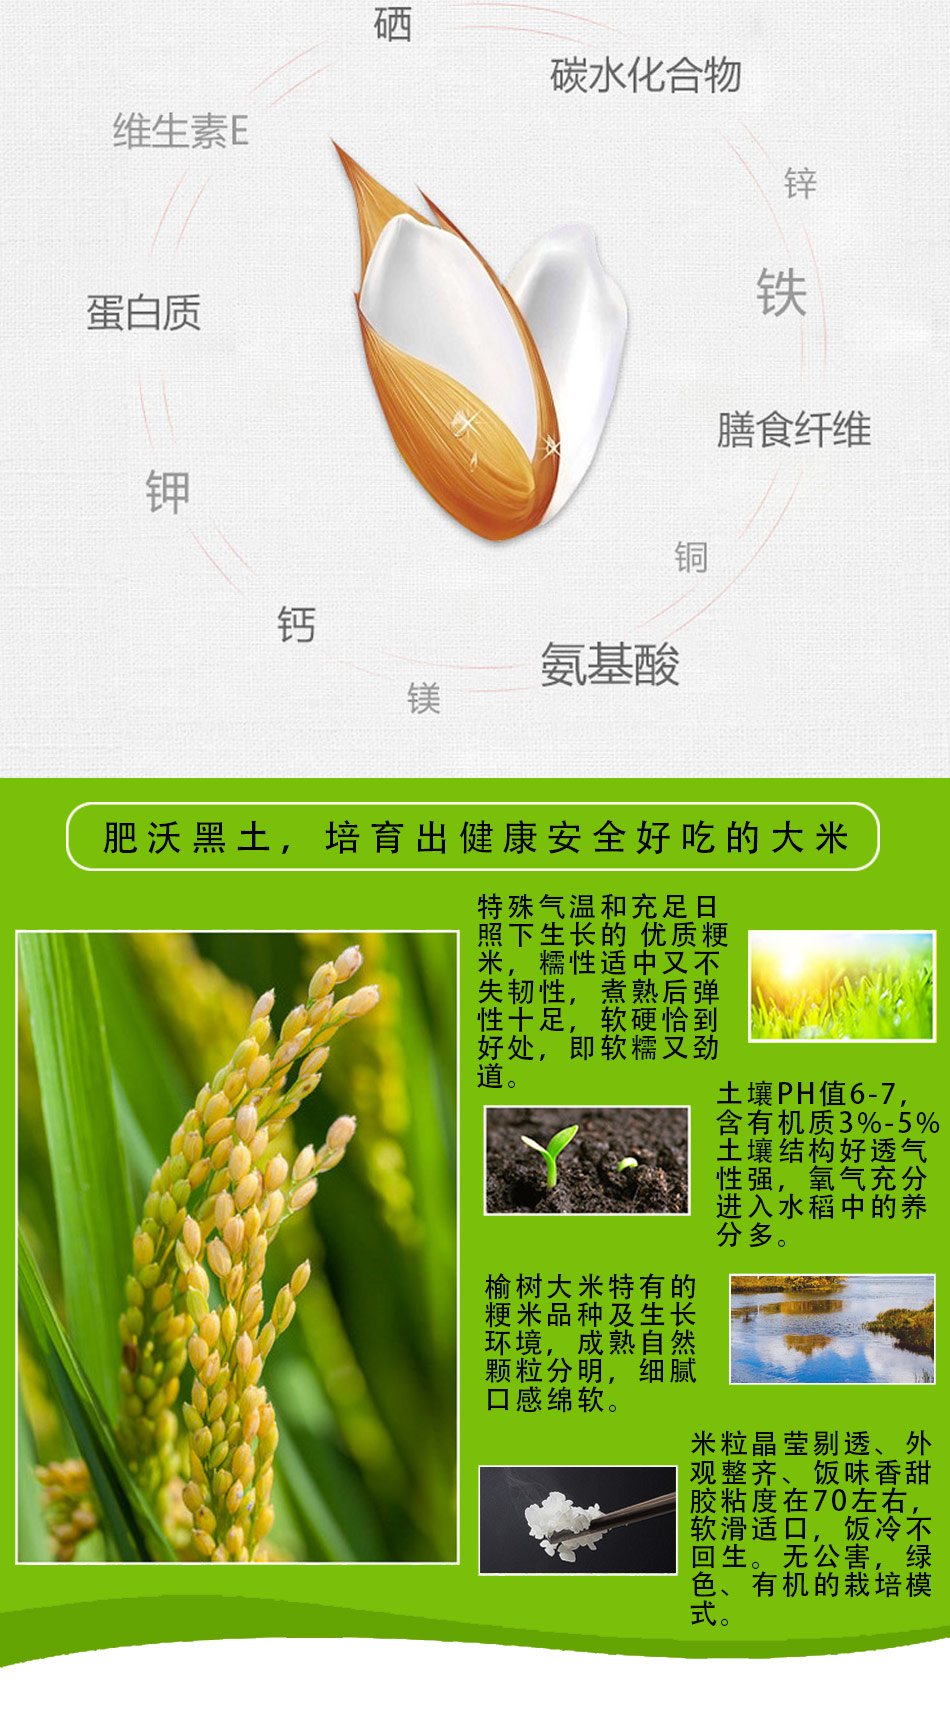  吉林胜金米业有限公司：现代化管理水稻才是企业发展正确方向